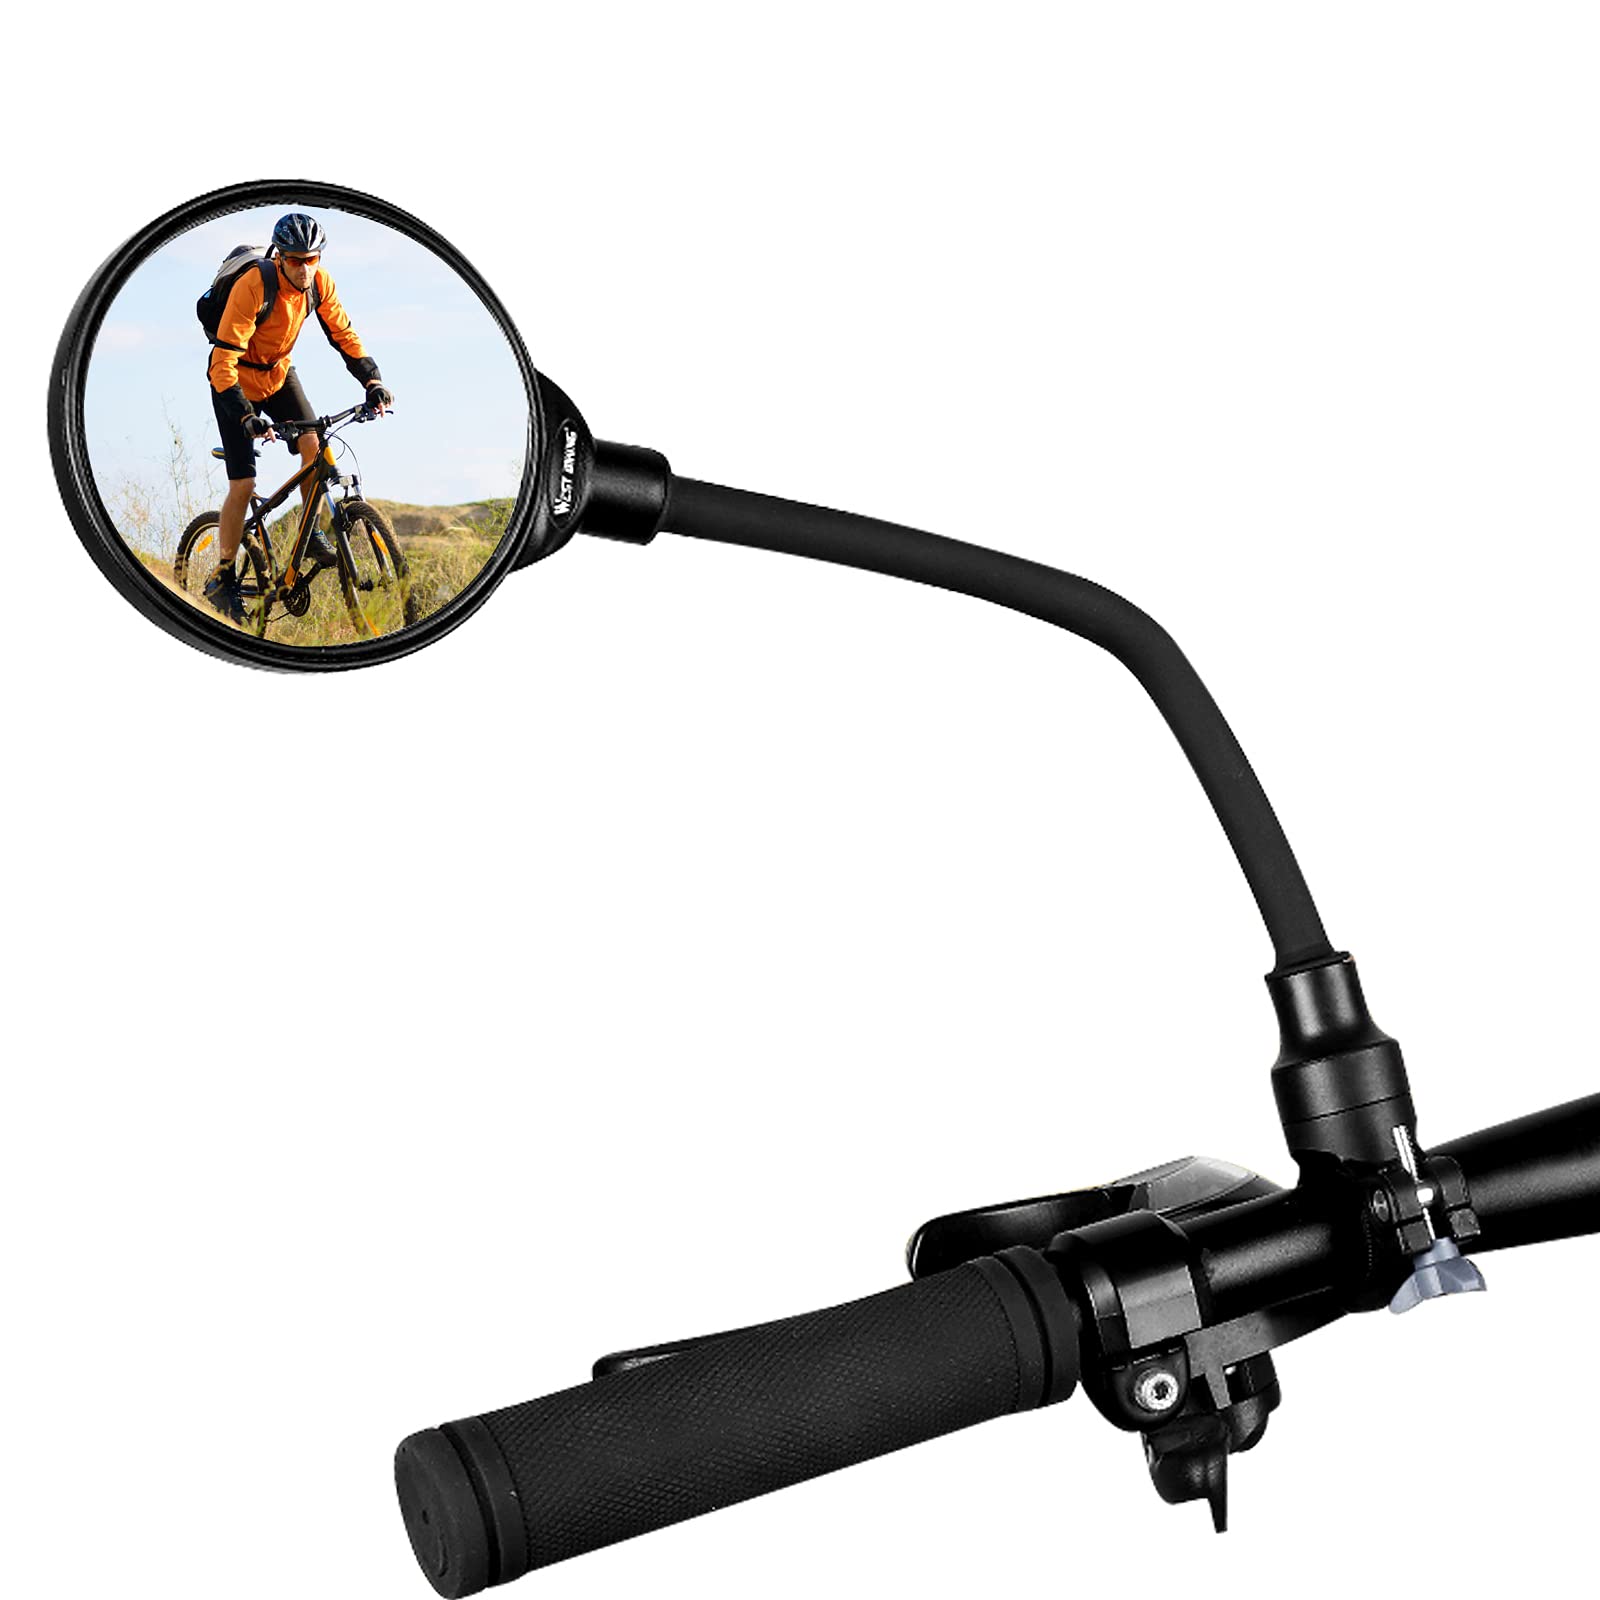 1 Stück Fahrradspiegel 360 ° Verstellbarer Fahrrad Rückspiegel Fahrrad Weitwinkel Rückspiegel Stoßfest Convex HD Safe Spiegel Universal für Mountainbike/Rennrad/Fahrrad/Motorrad für Lenker 22-32mm von Hyxodjy